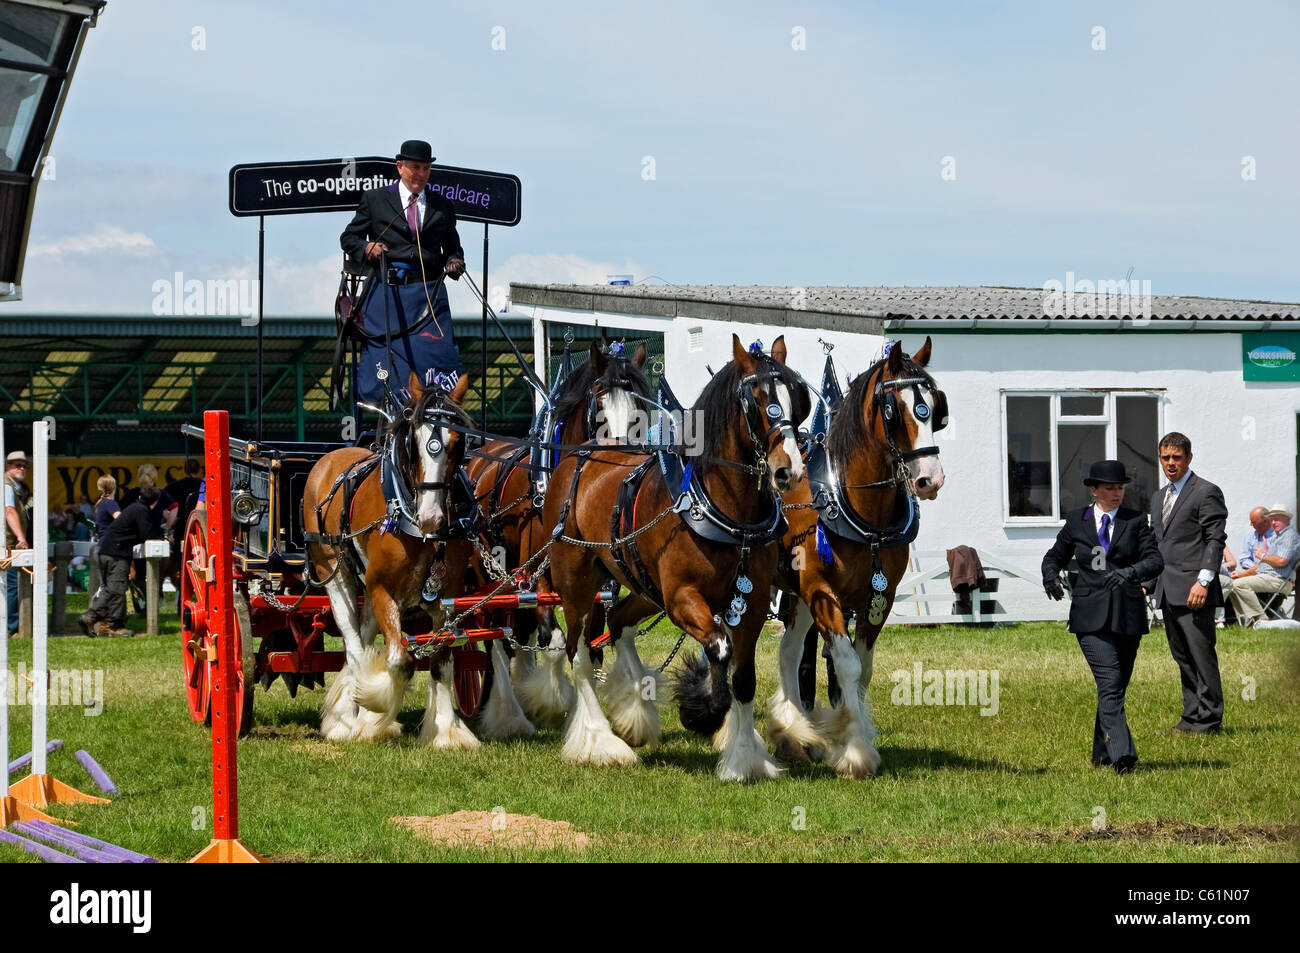 Équipe de quatre chevaux lourds au Great Yorkshire Show en été Harrogate North Yorkshire Angleterre Royaume-Uni GB Grande-Bretagne Banque D'Images